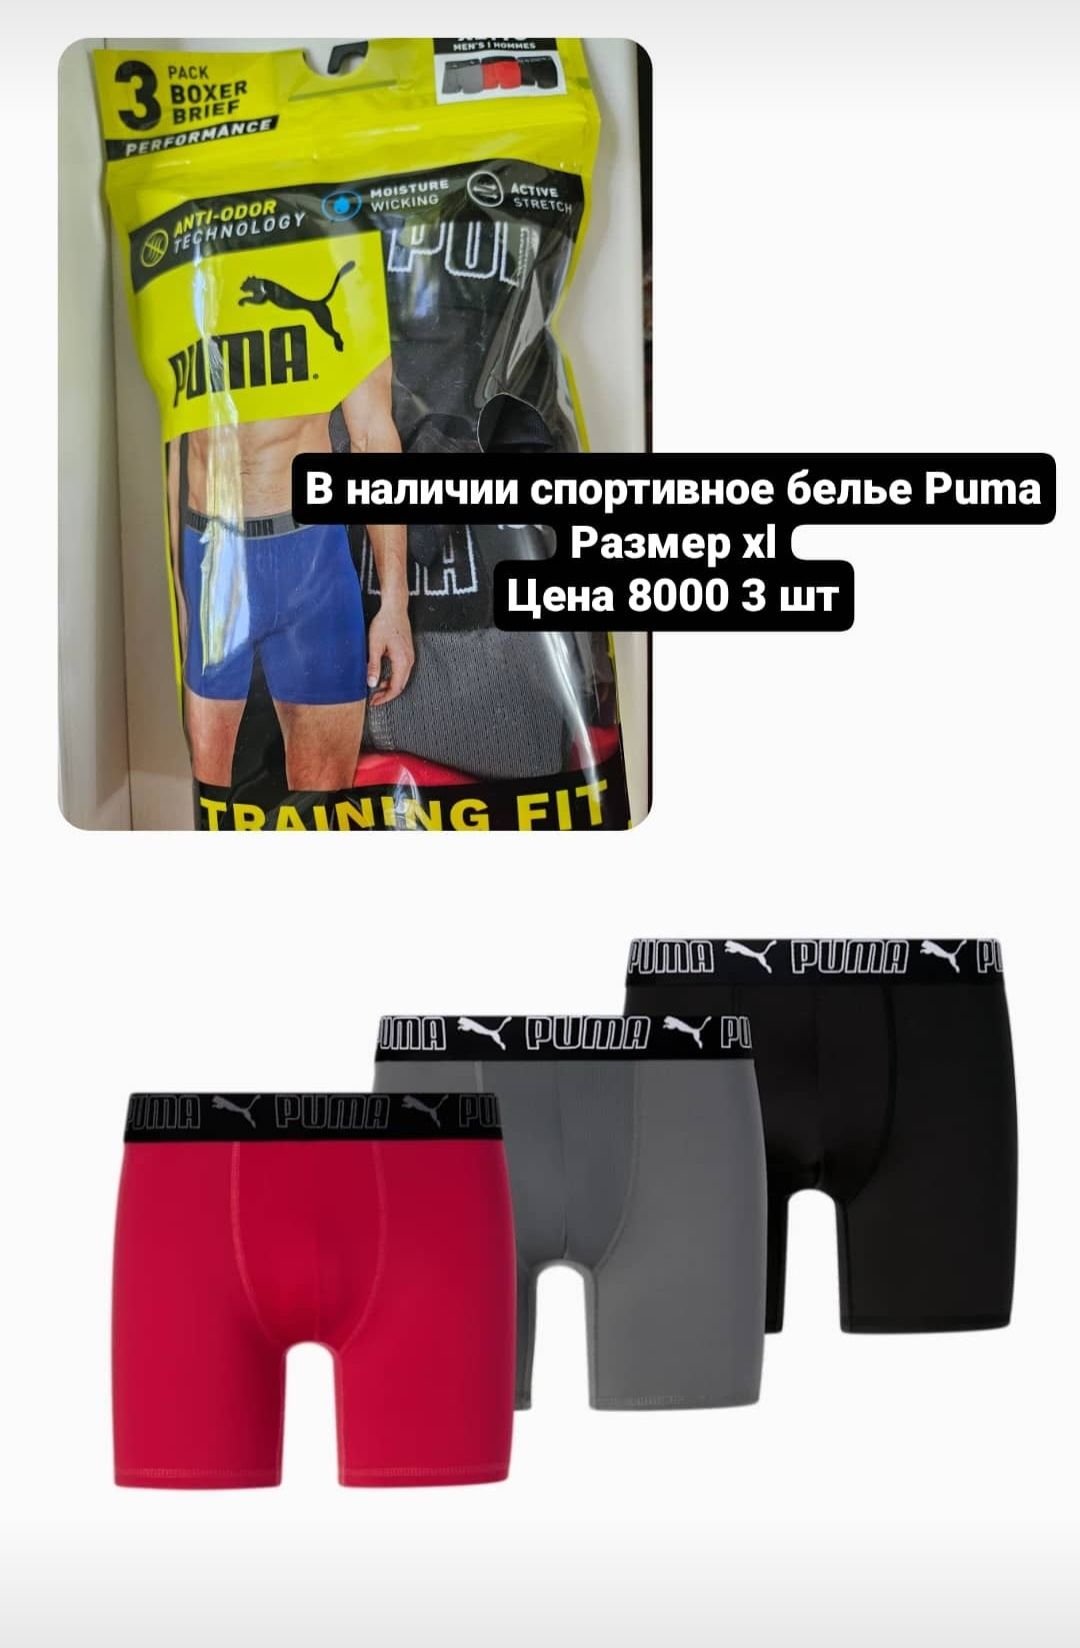 Продам спортивное белье Puma